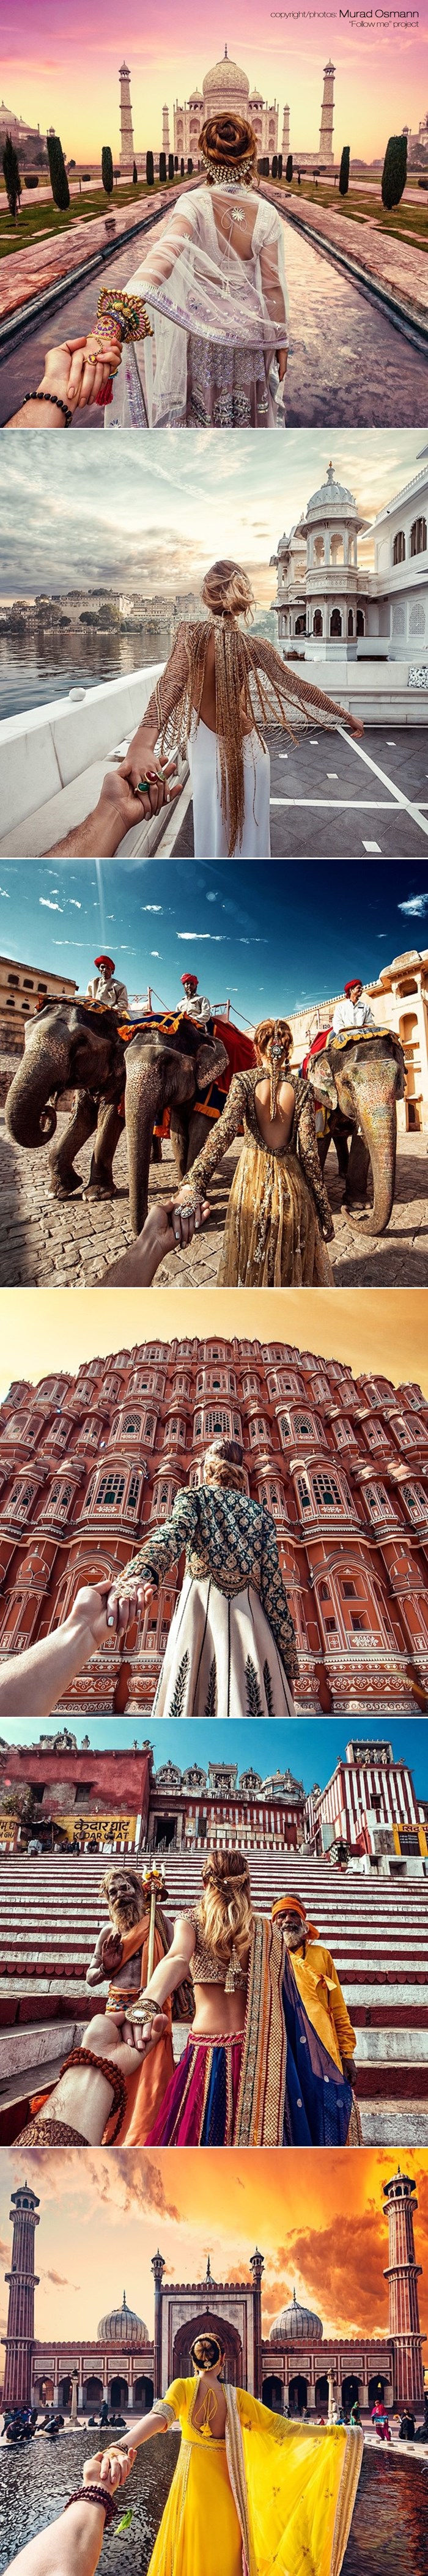 Galerija: Fantastične fotke s putovanja oko svijeta - Indija!